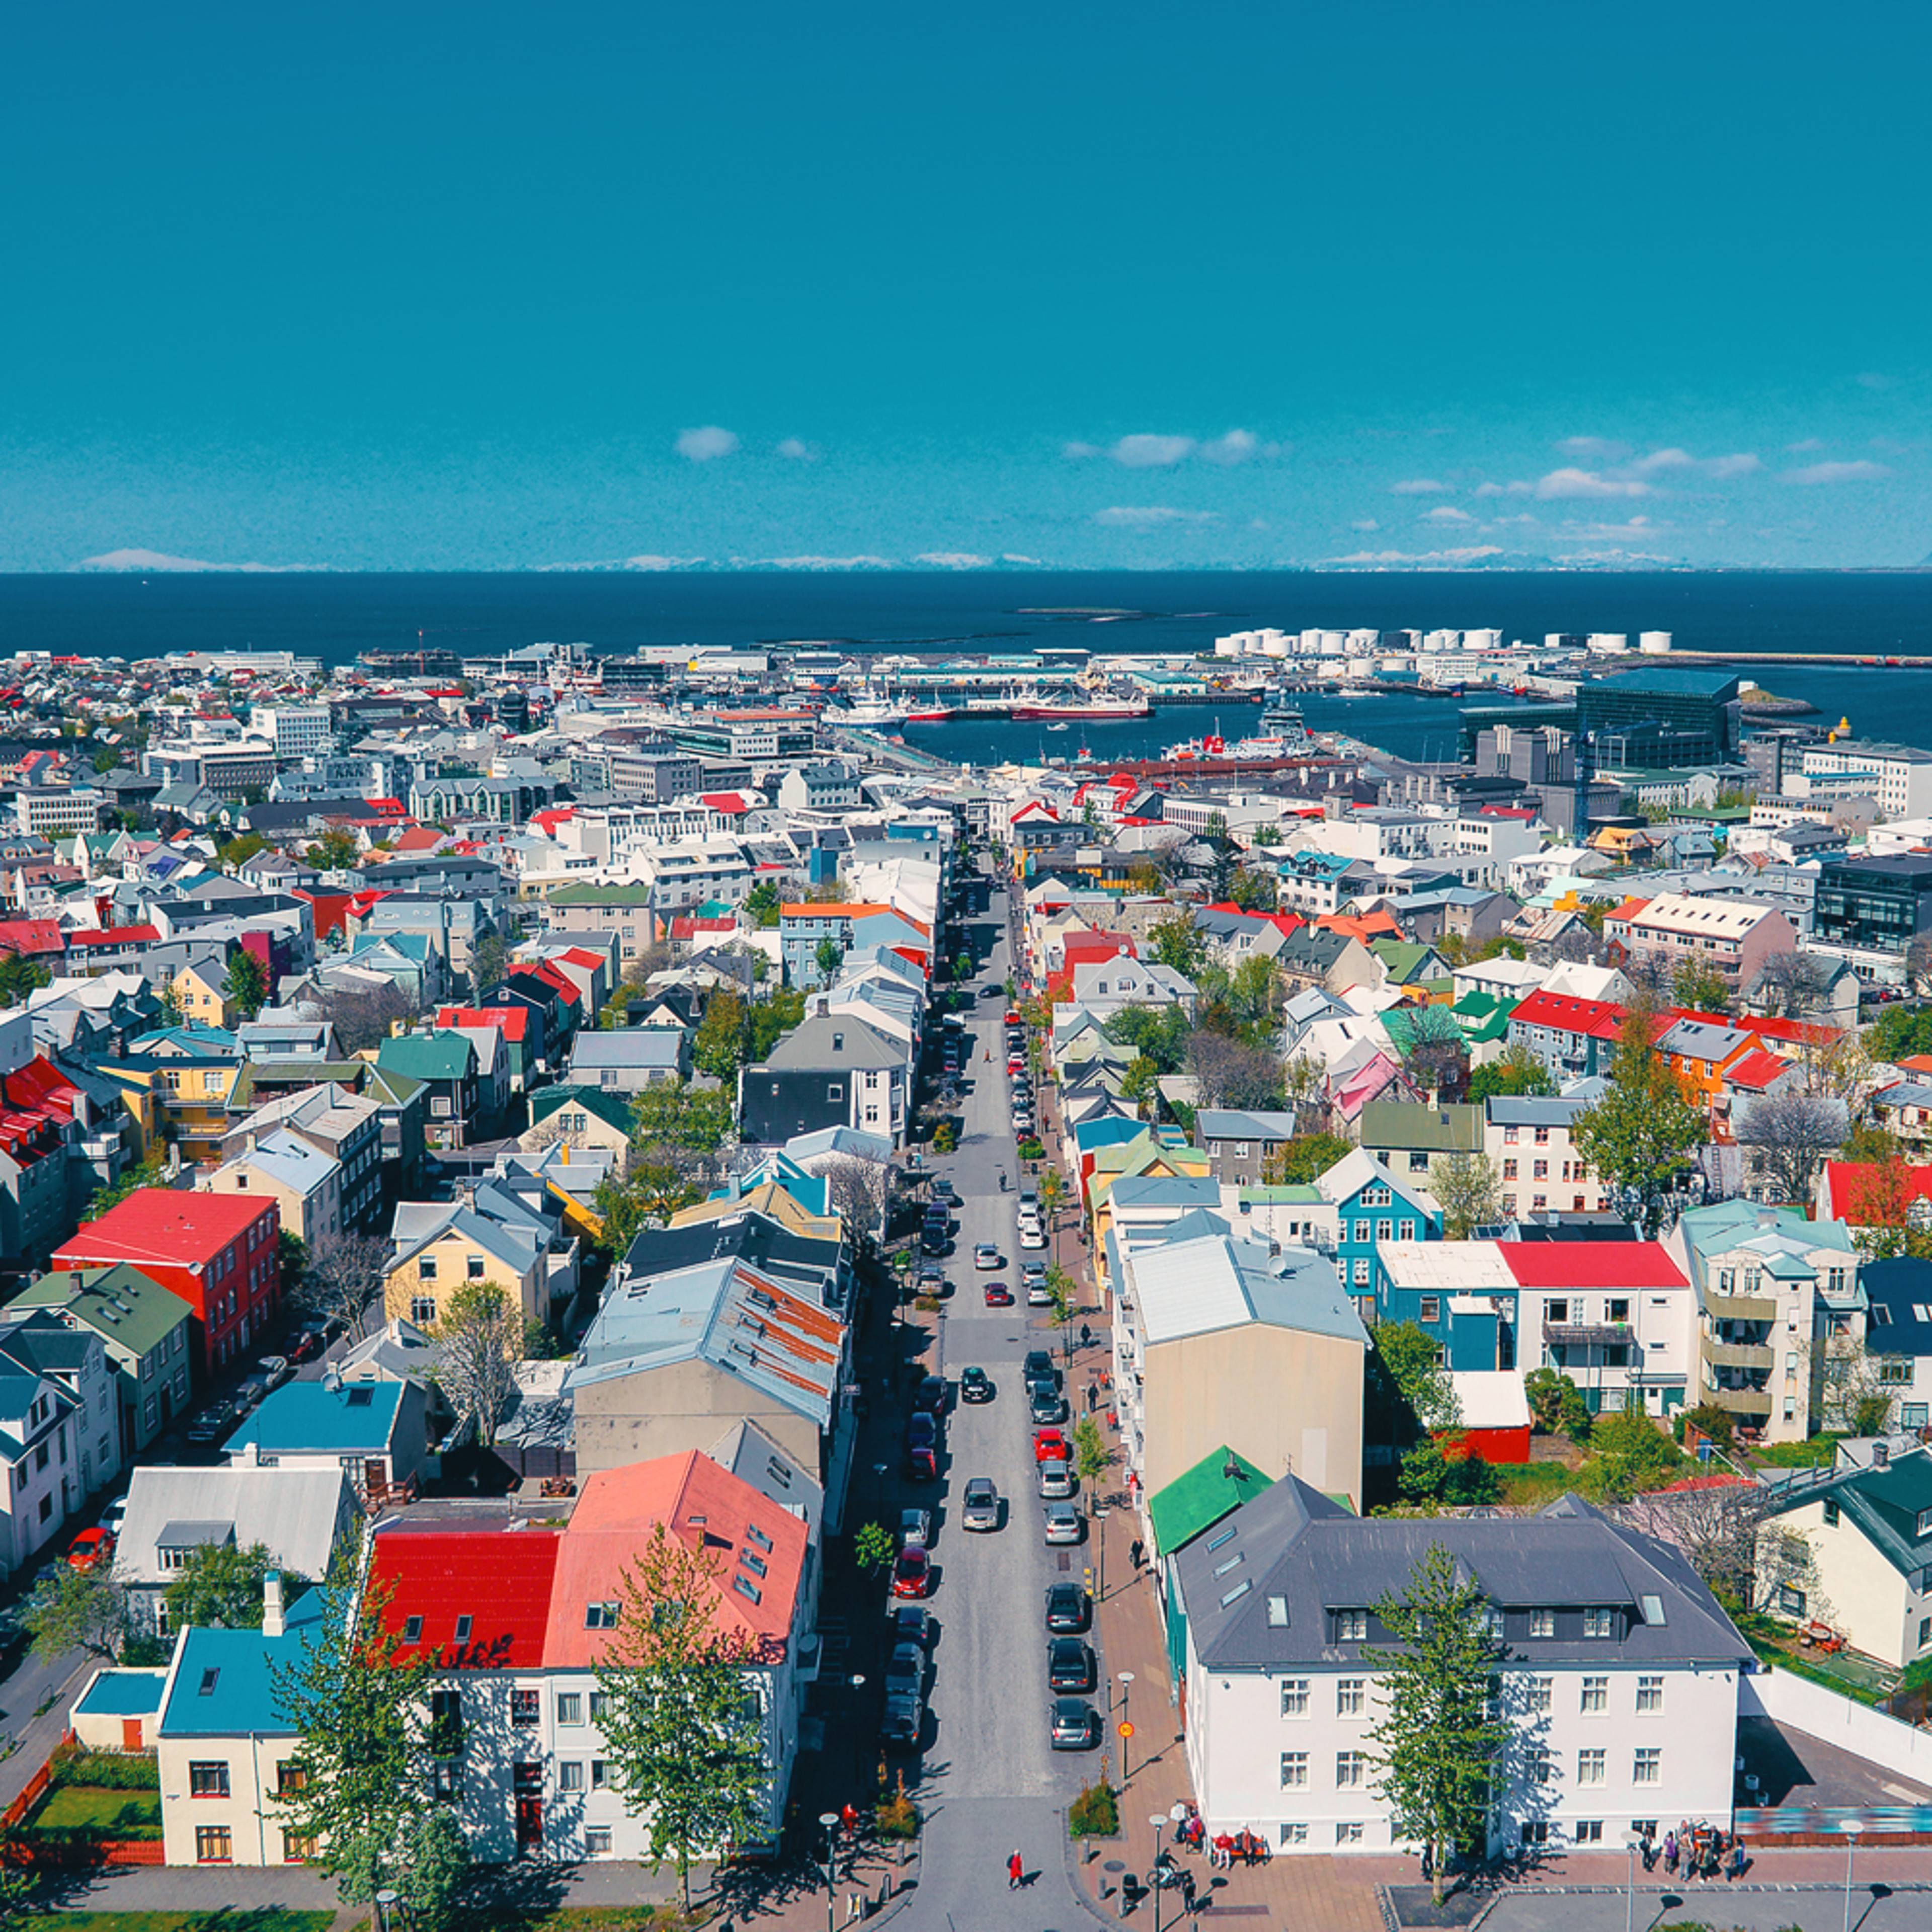 Städtereise Island - Reise jetzt individuell gestalten